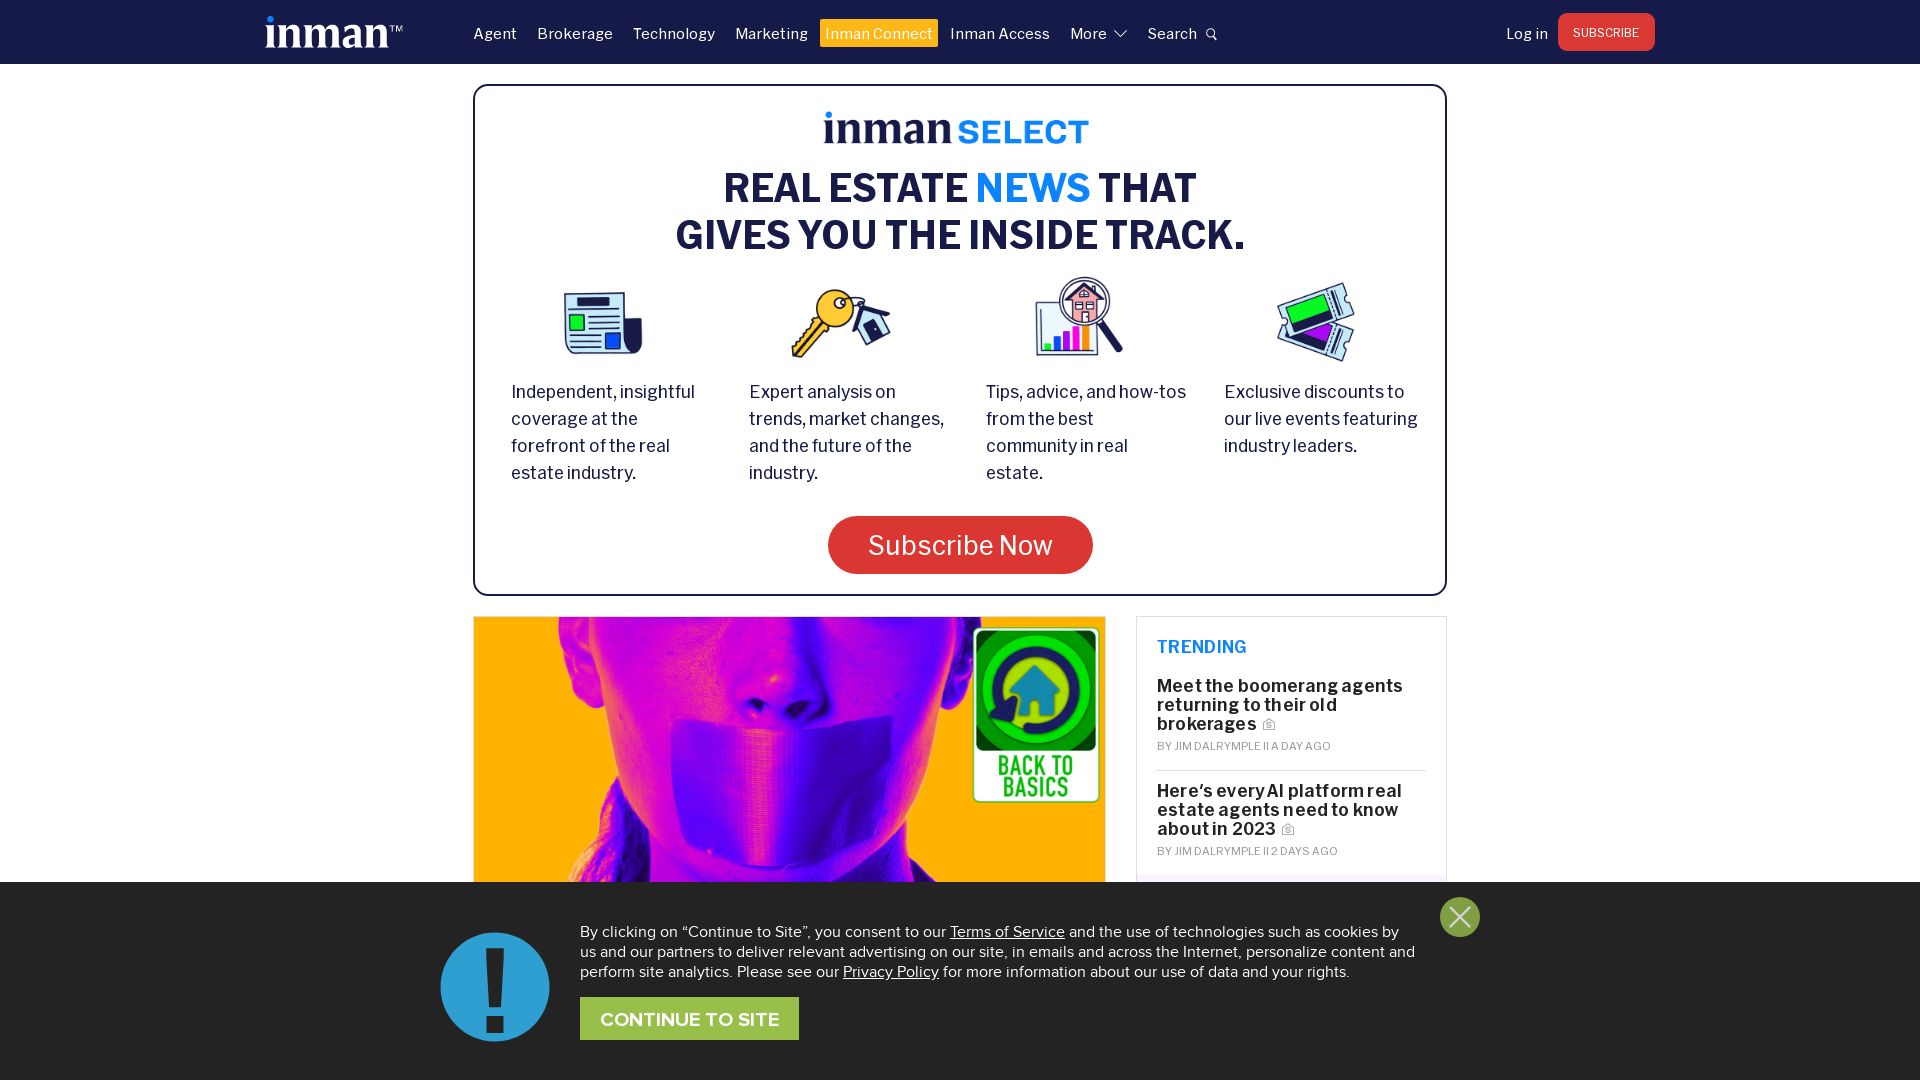 网站状态 inman.com 是  在线的